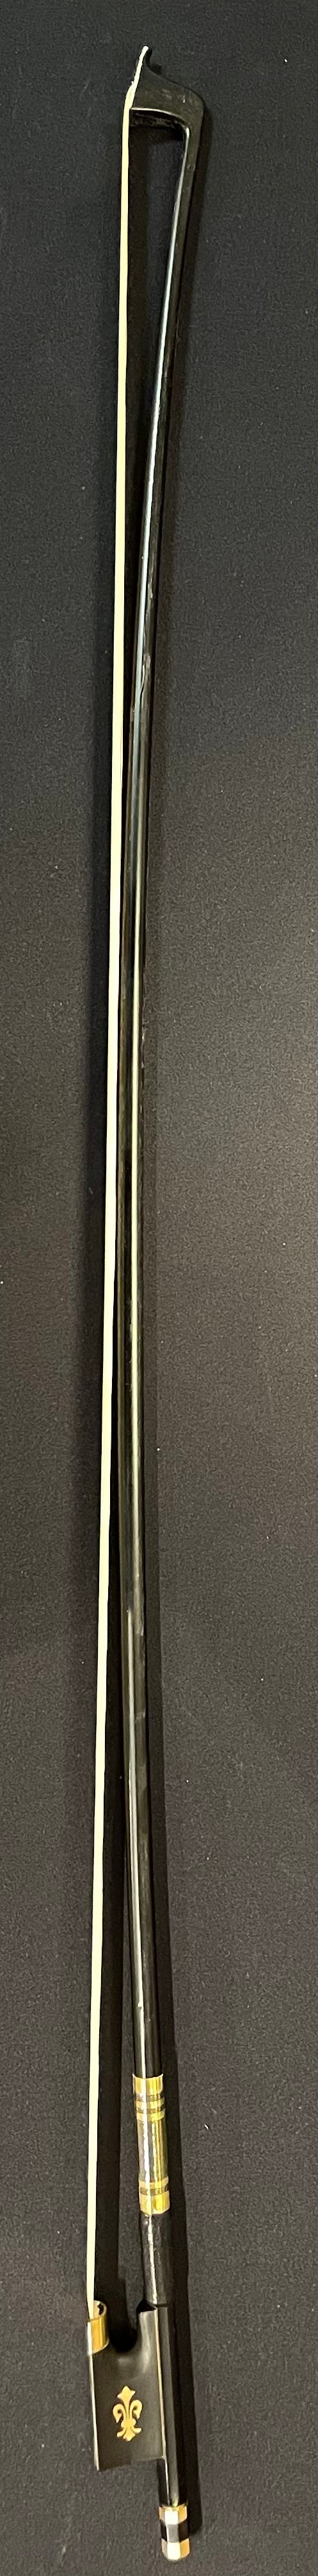 4/4 Violin Bow - TZC1 Fiber Glass Model